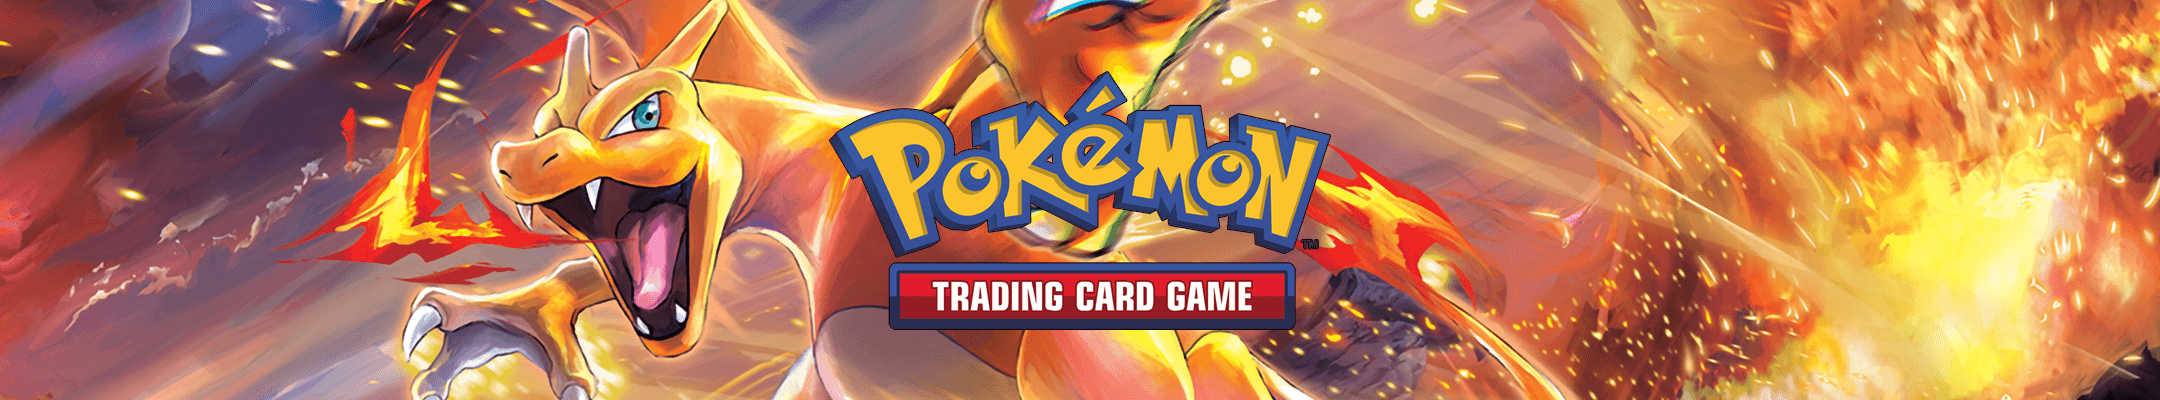 Pokémon Pre-Orders - The Card Vault